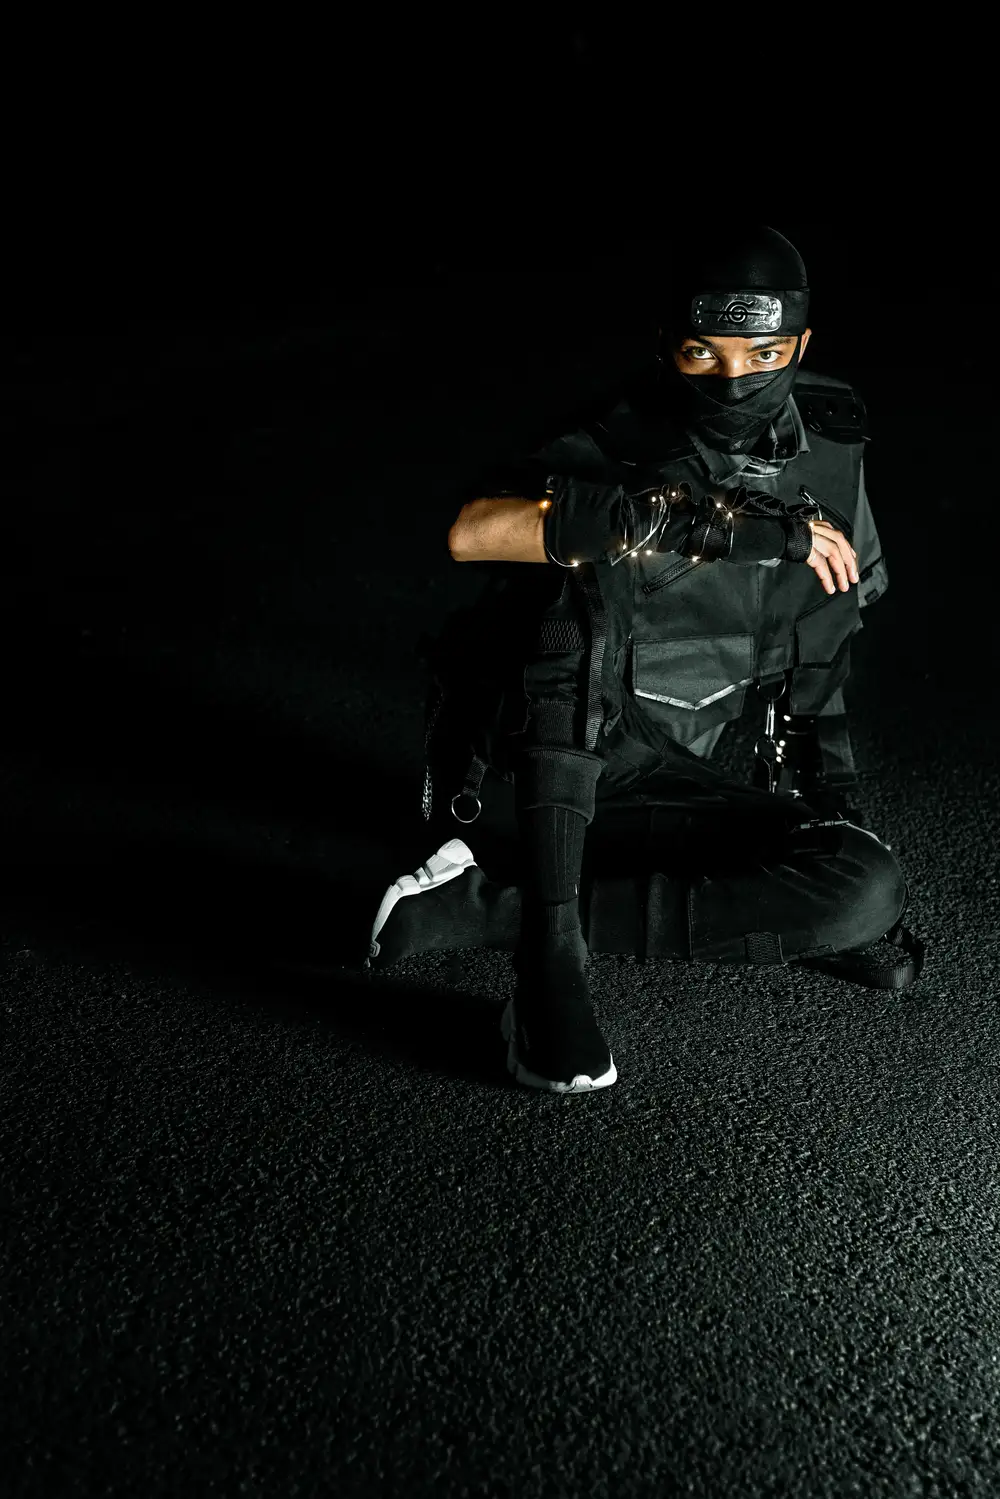 Ninja in black sitting down